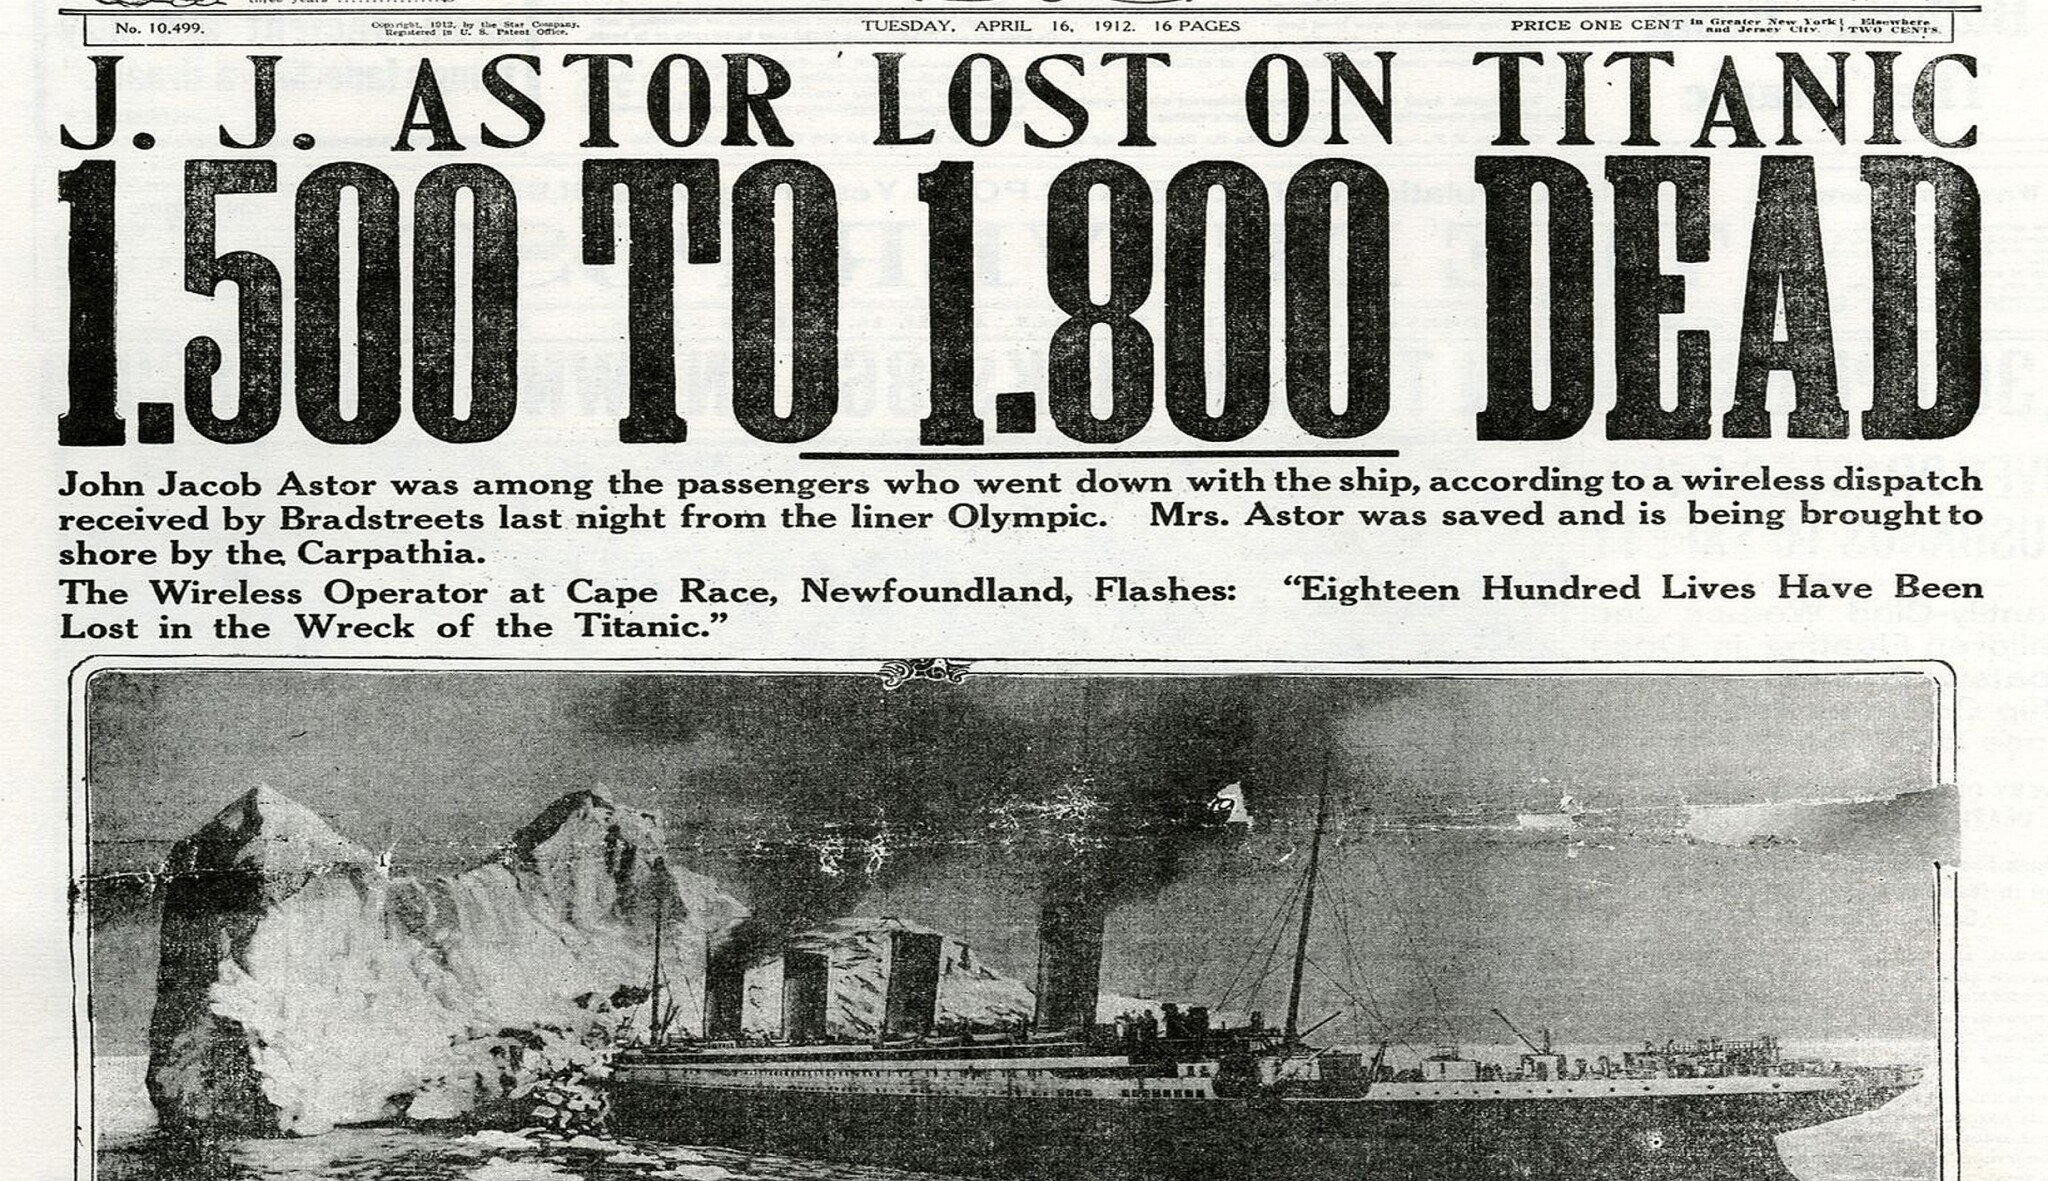 Takhle vypadaly noviny den po potopení Titaniku. Svět byl otřesený, rozsah zkázy nikdo nechápal